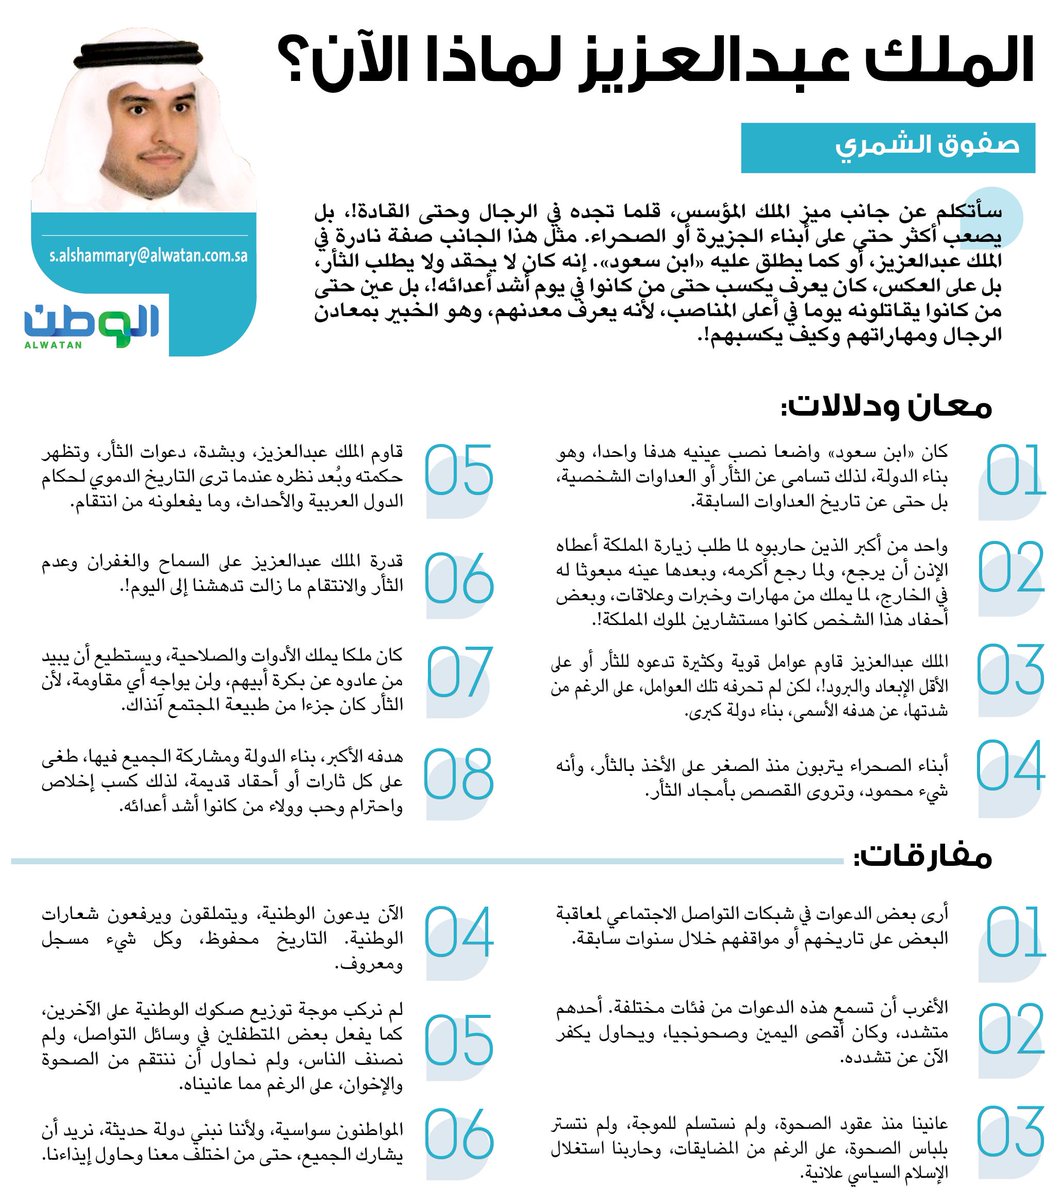 الملك عبدالعزيز لماذا الآن مقالات الوطن اكثر من ذلك